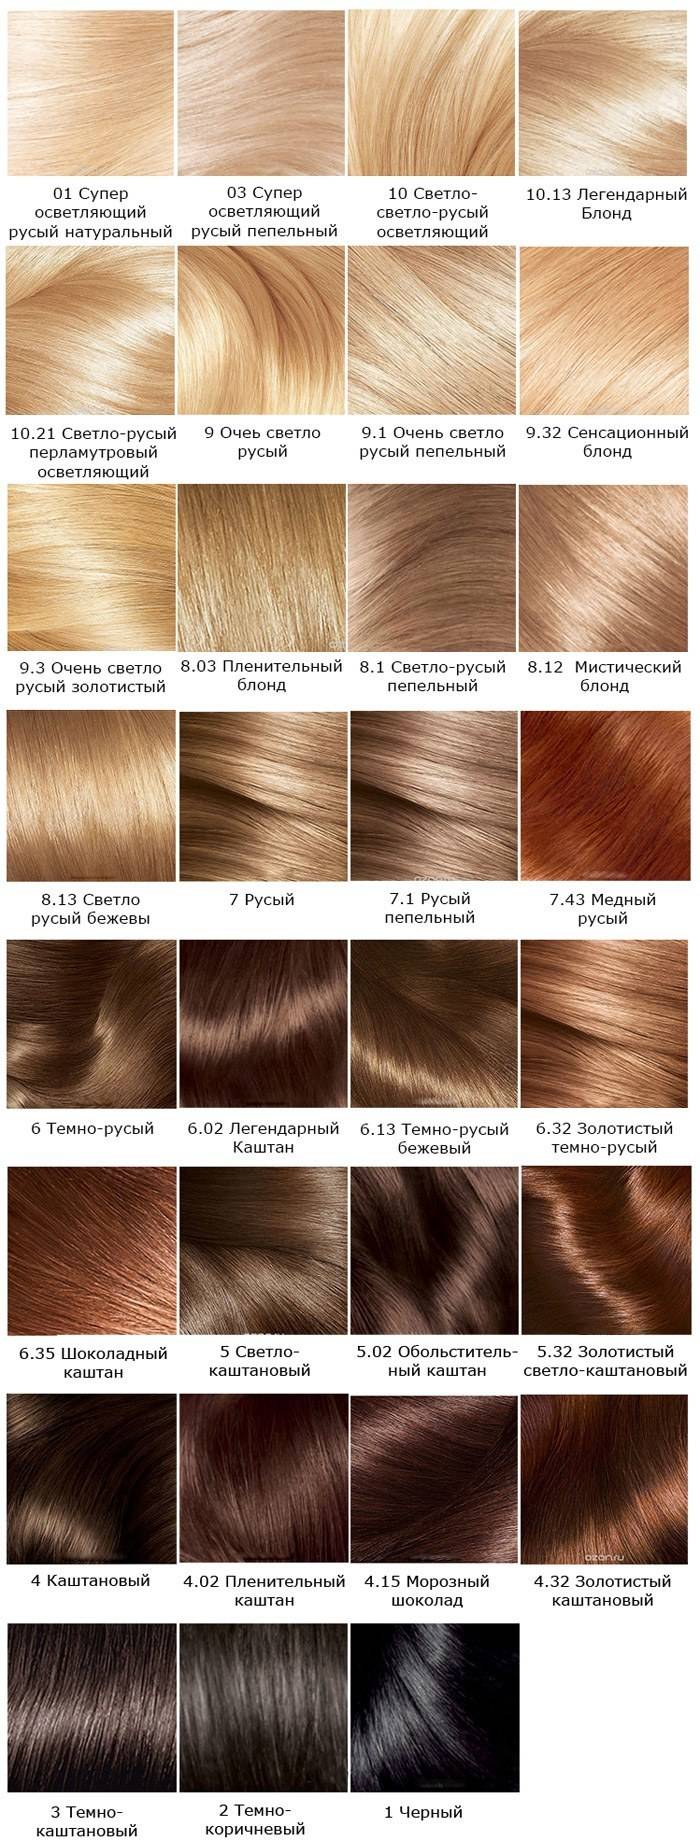 Золотисто-русый цвет волос. фото до и после окрашивания, кому идёт, краски